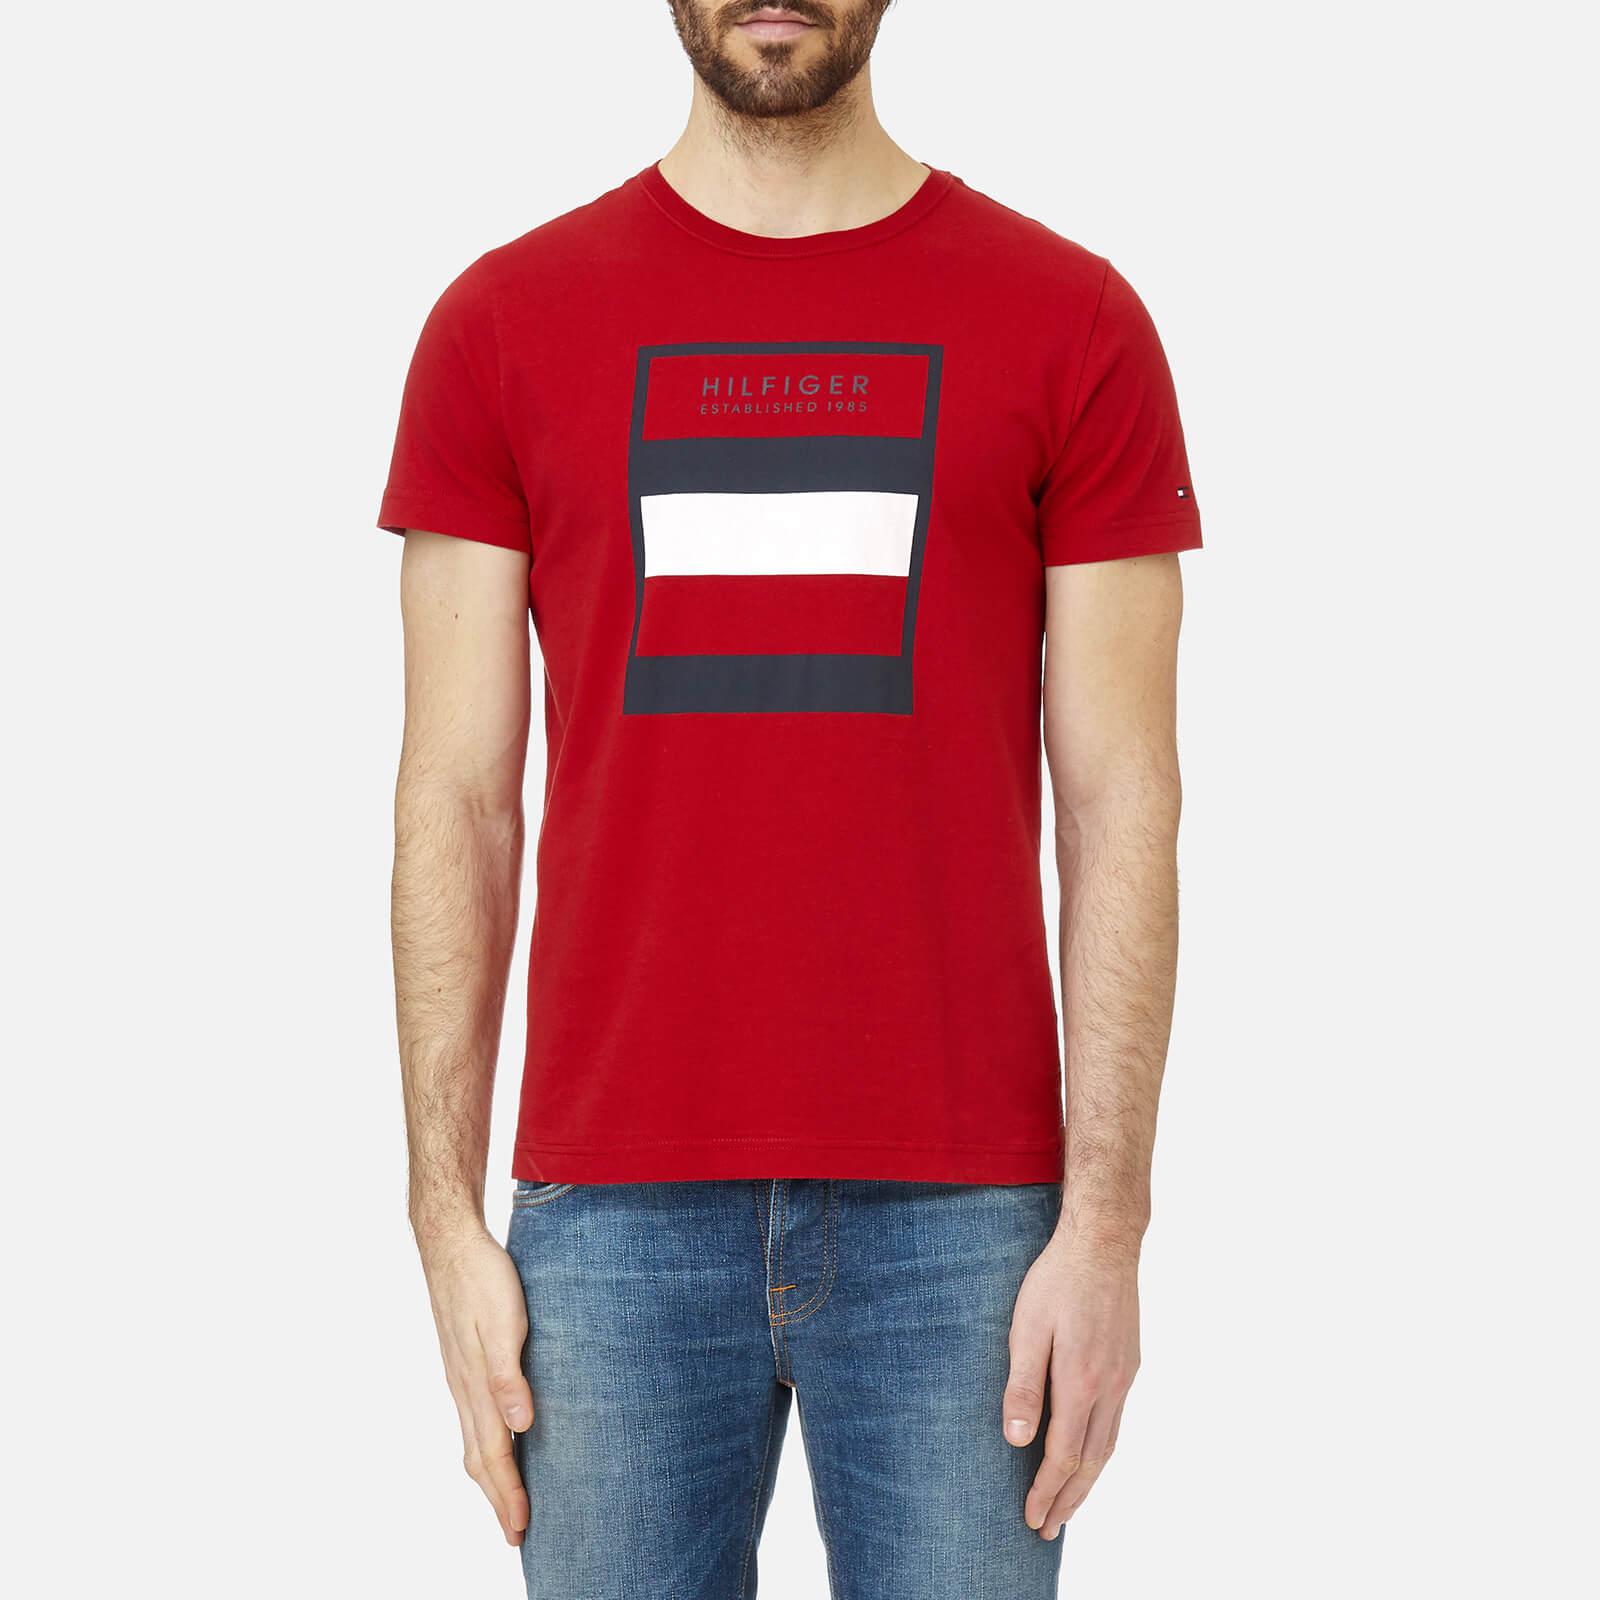 Dubai based tommy hilfiger large logo t shirt zara india online